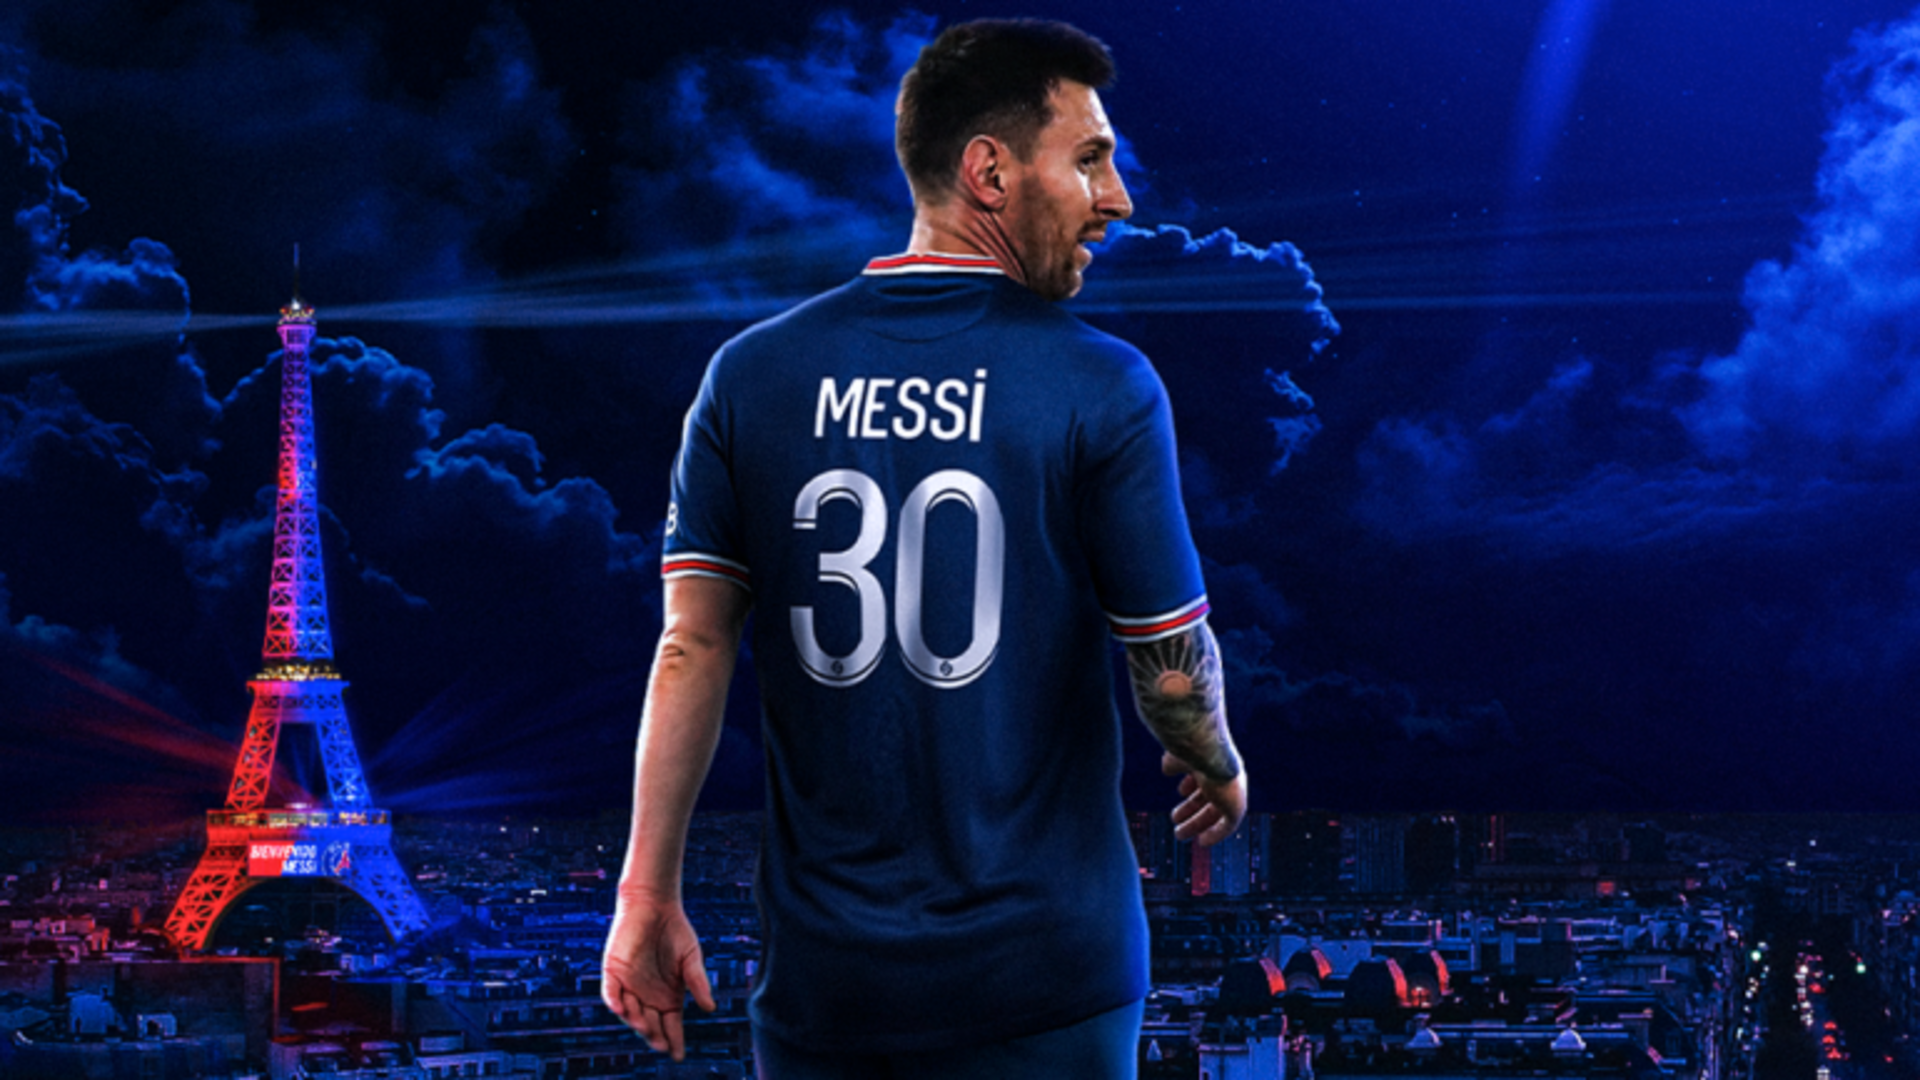 Hình nền Messi đẹp cực chất - Ảnh danh thủ nổi tiếng